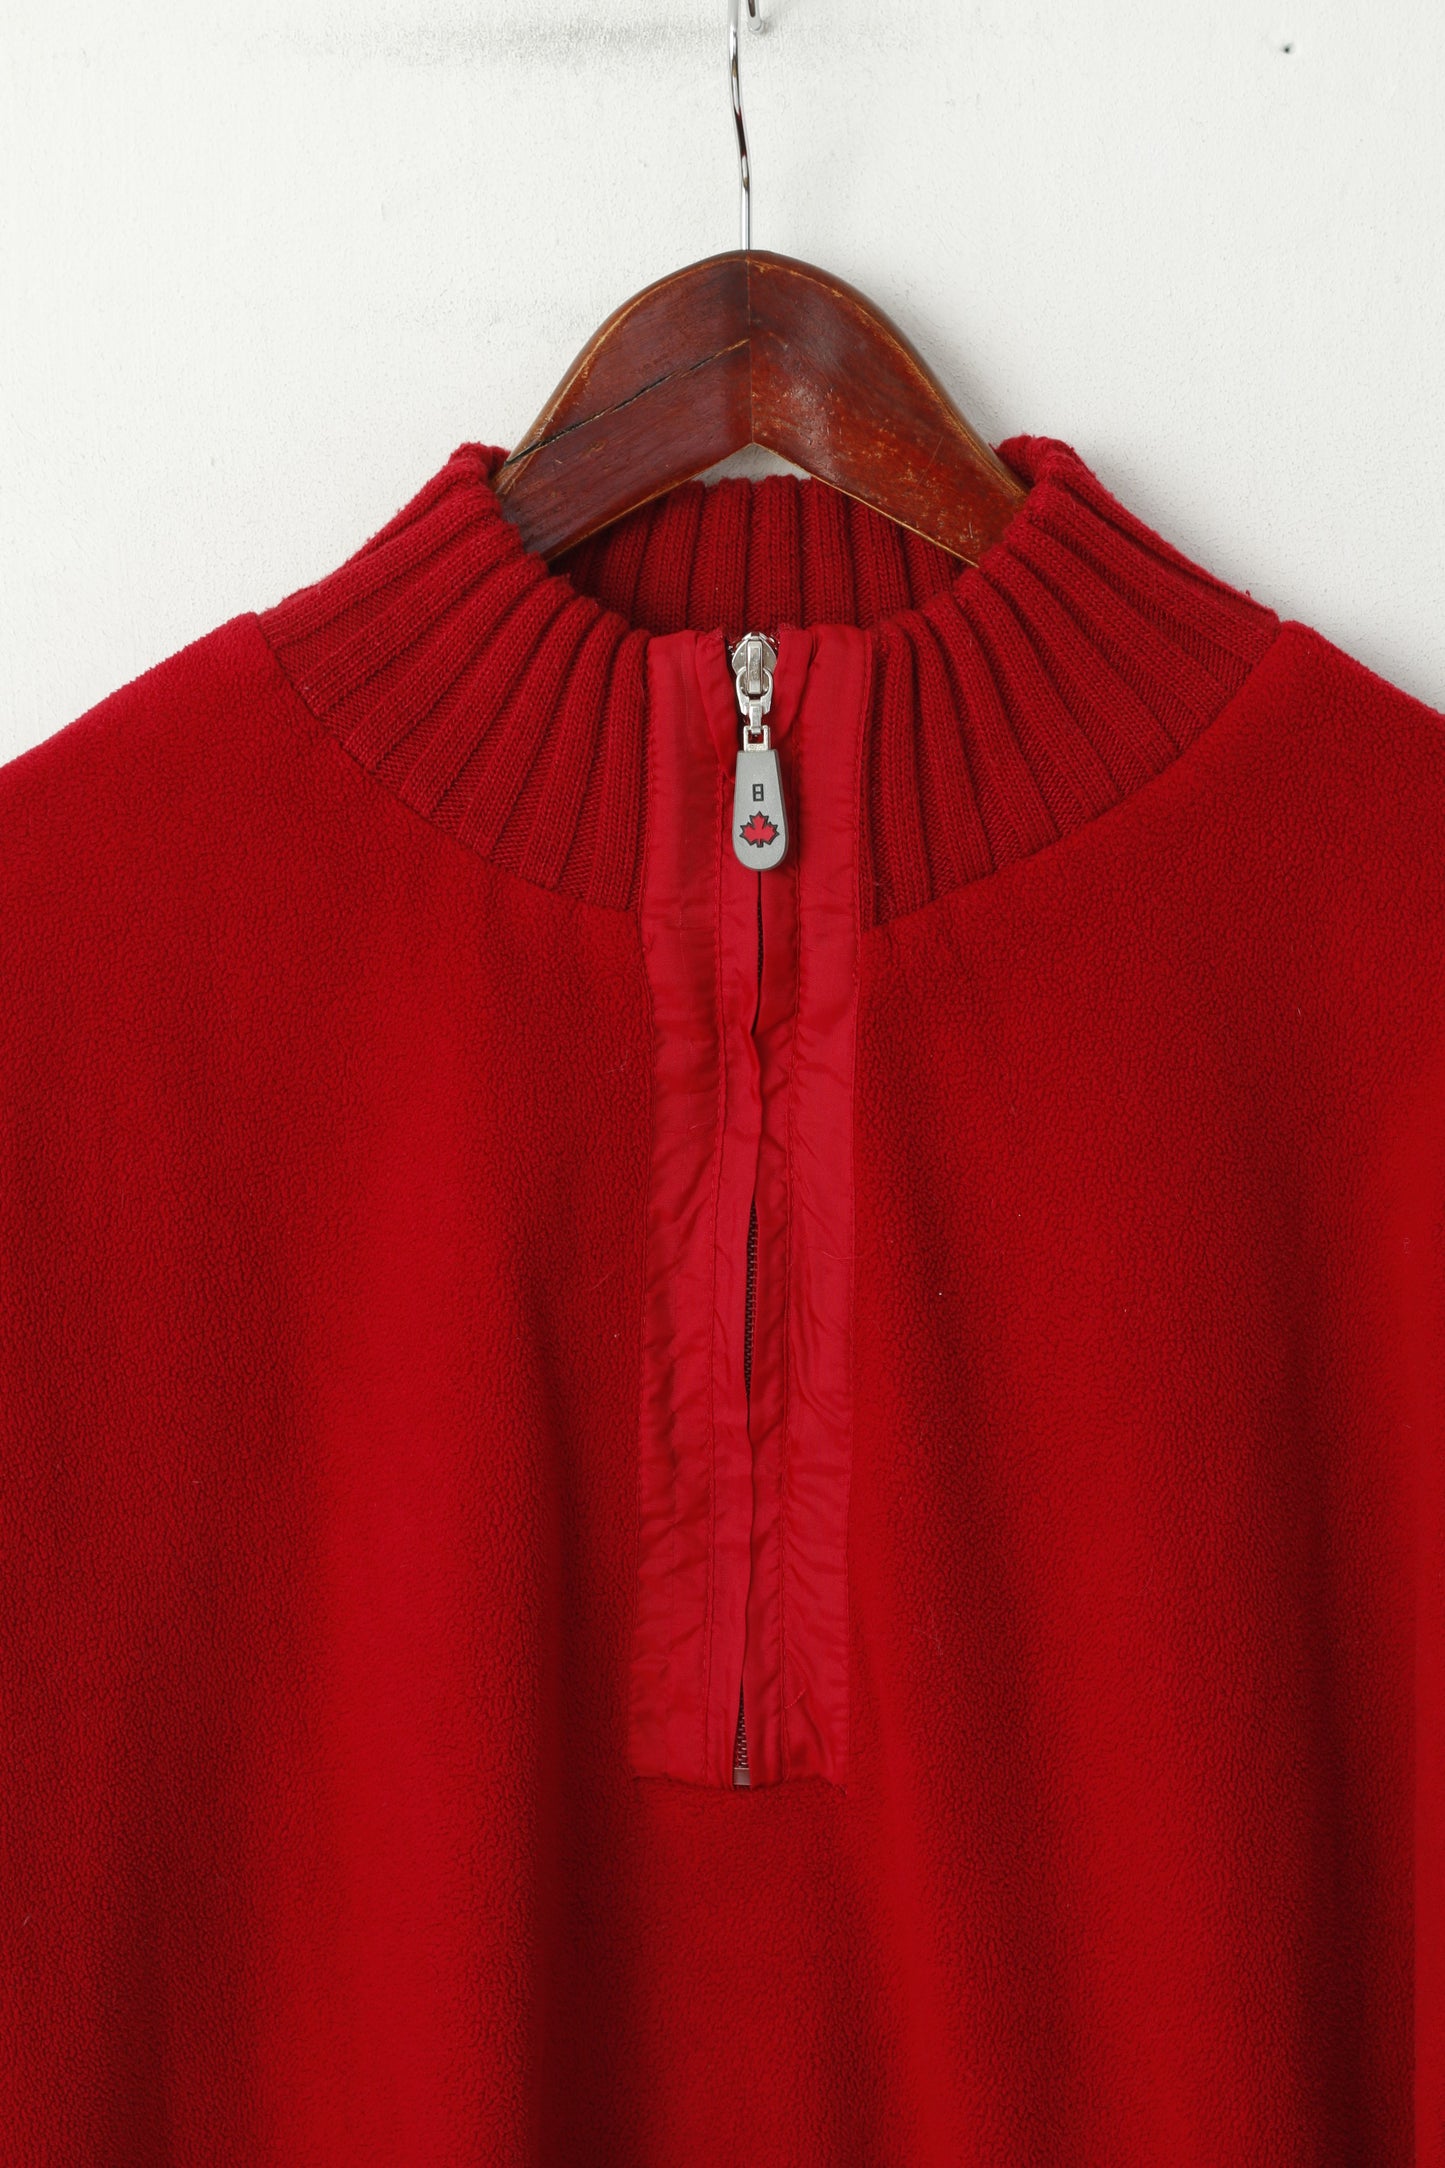 CANADIAN by Batistini Men L Sweatshirt Red Fleece Zip Neck Pullover Casual Top